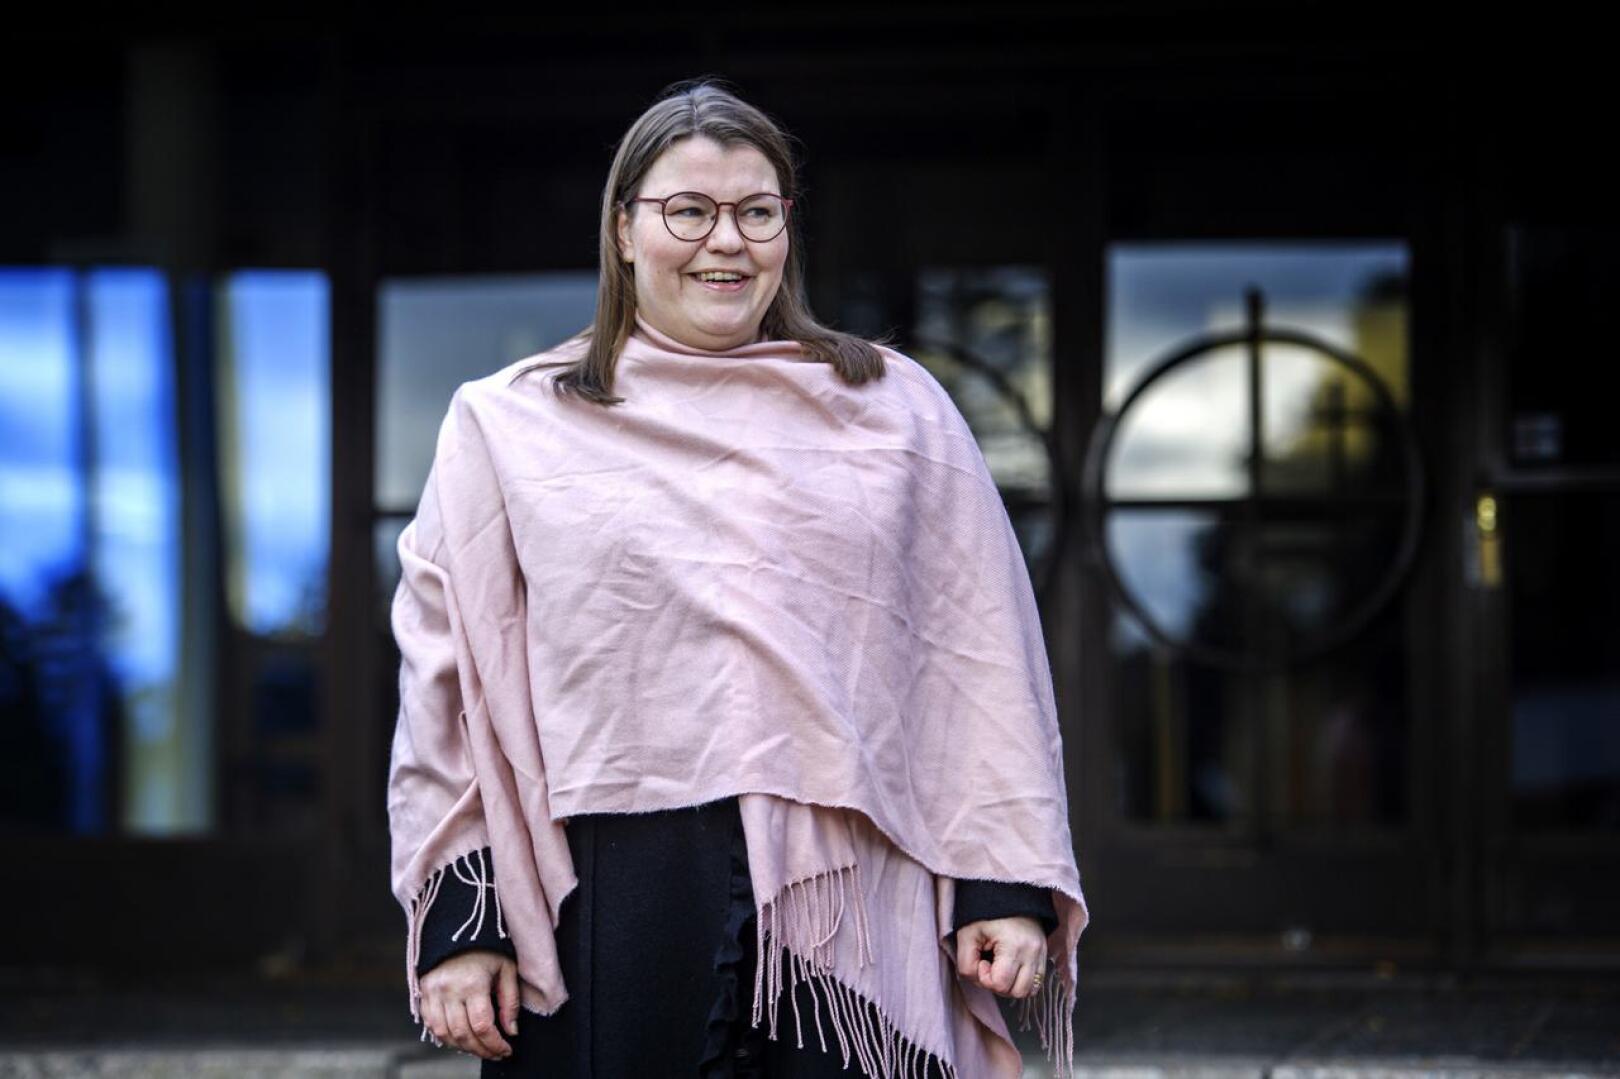 Kokkolan suomalaisen seurakuntaneuvoston tuore päätös hyväksyä Emilia Teerikankaan oikaisuvaatimus ja lopettaa prosessi yllätti seurakuntapastorin iloisesti.